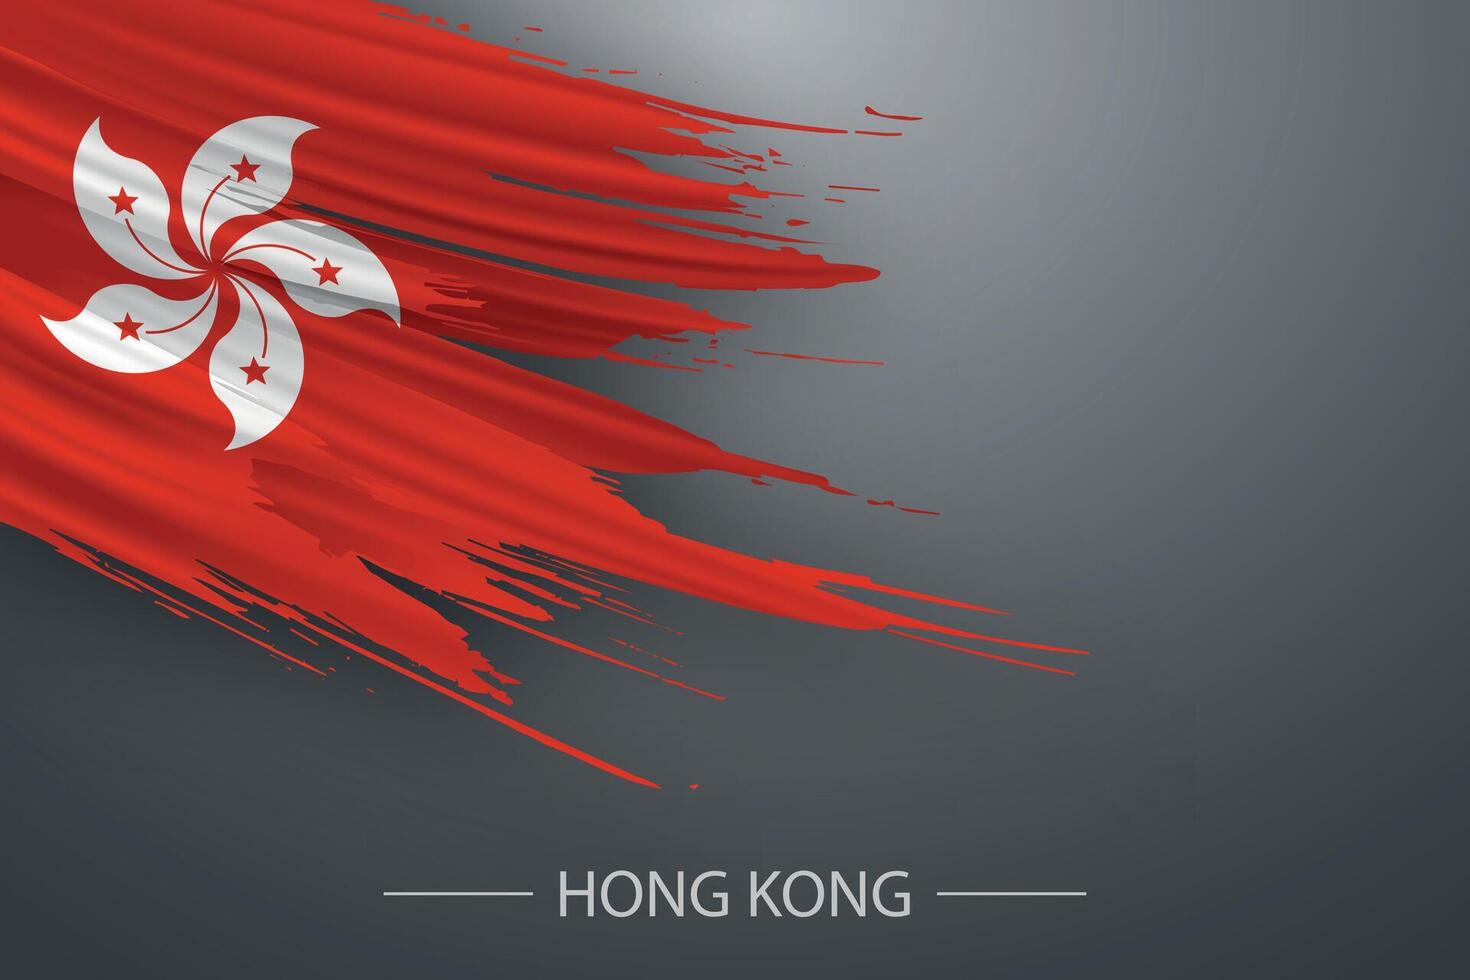 3d grunge brush stroke flag of Hong Kong vector